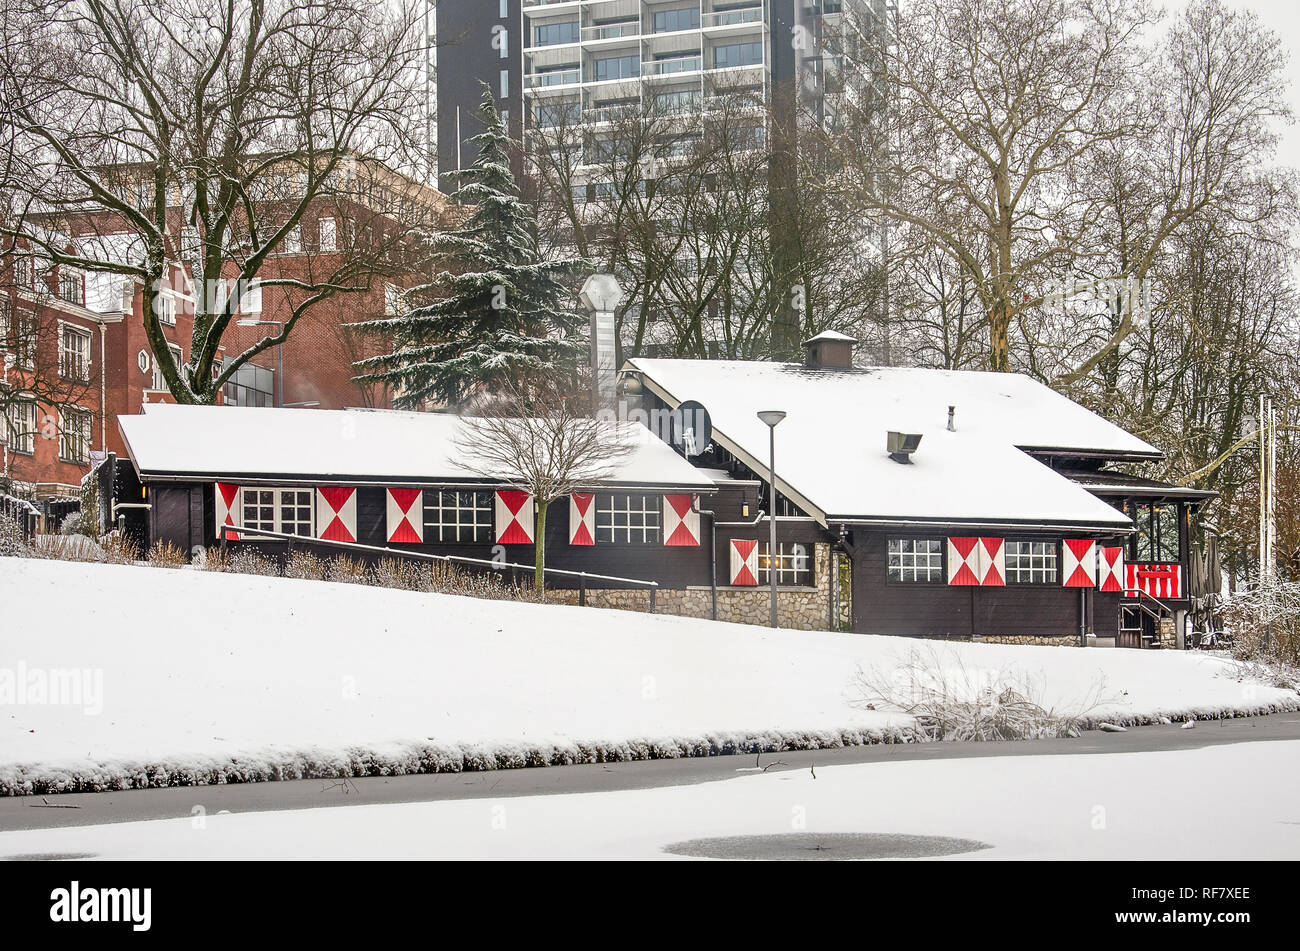 Rotterdam, 22. Januar 2019: Verschneite "Swiss Chalet", jetzt ein türkisches Restaurant, in die winterliche Landschaft des Parks, mit modernen Hochhaus in der Stockfoto